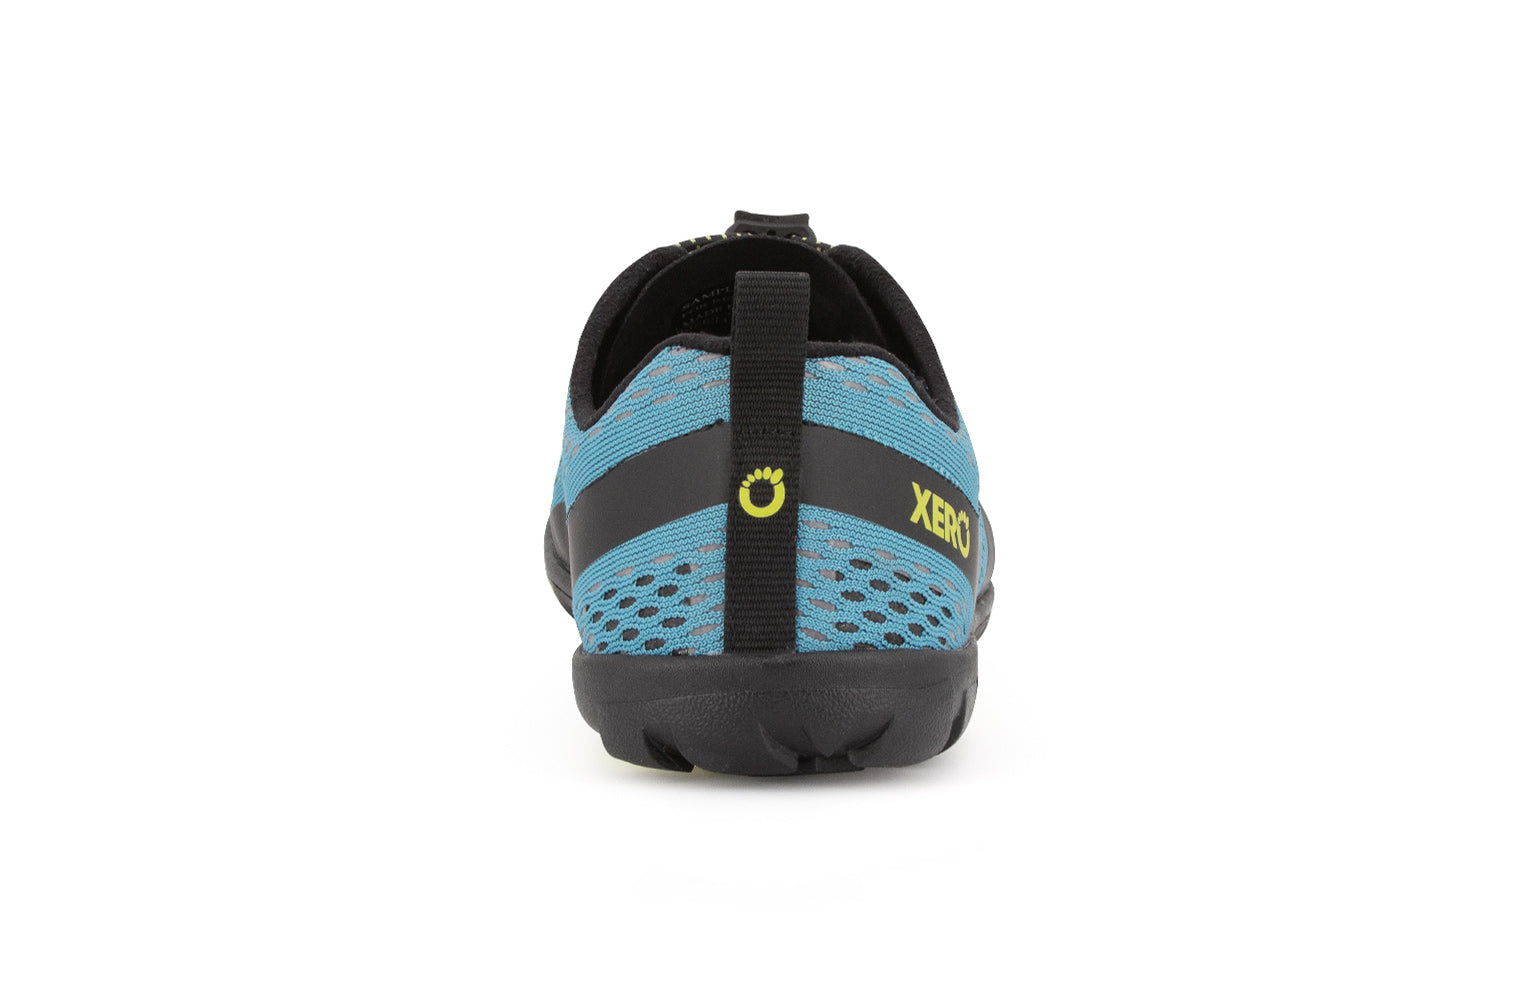 Xero Shoes Aqua X Sport barfods vand træningssko til mænd i farven surf, bagfra